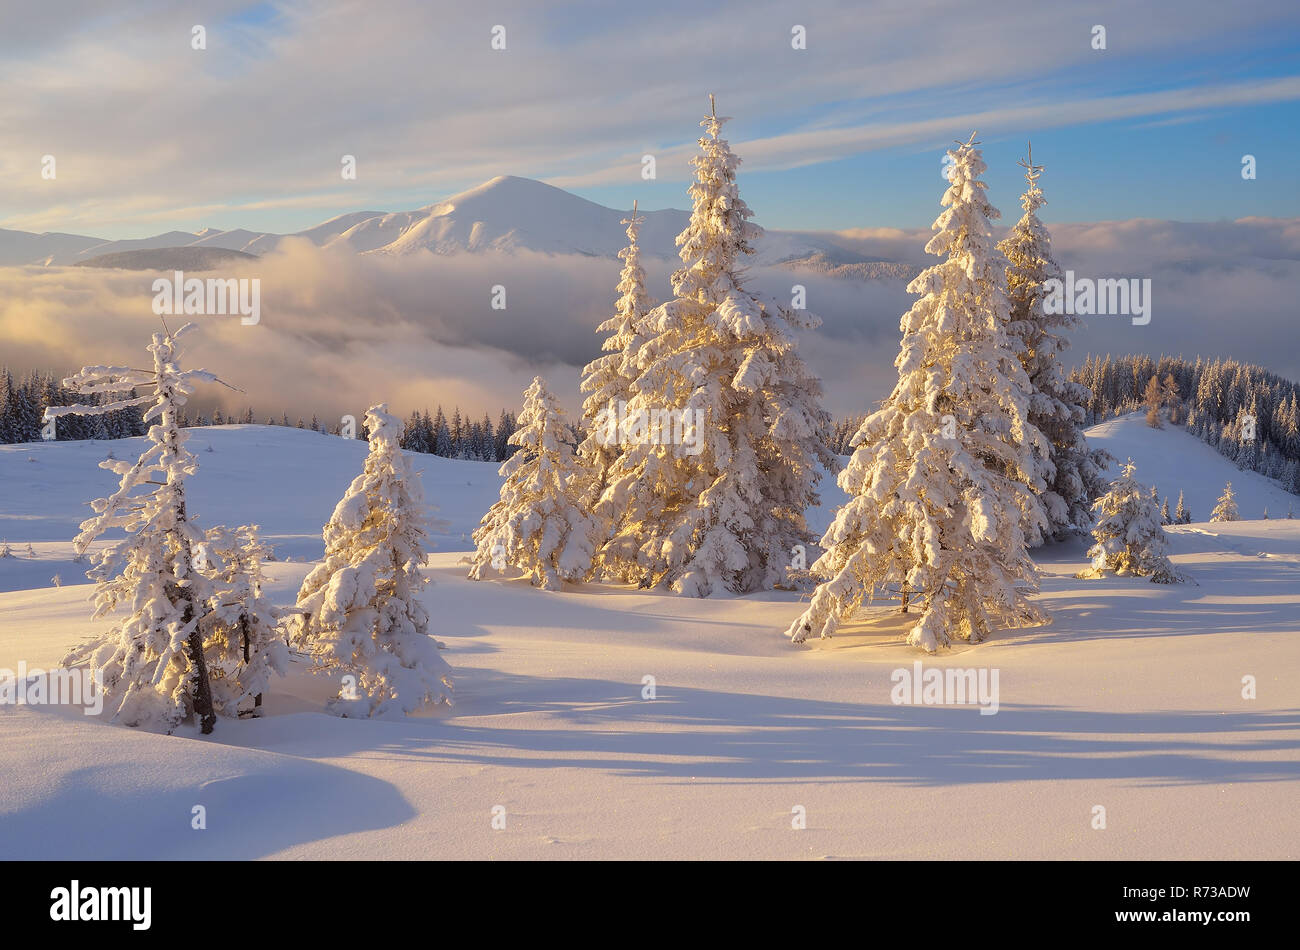 Foto Di Paesaggi Di Natale.Favoloso Paesaggio Di Natale Abeti Sotto La Neve Belle Montagne Invernali Foto Stock Alamy